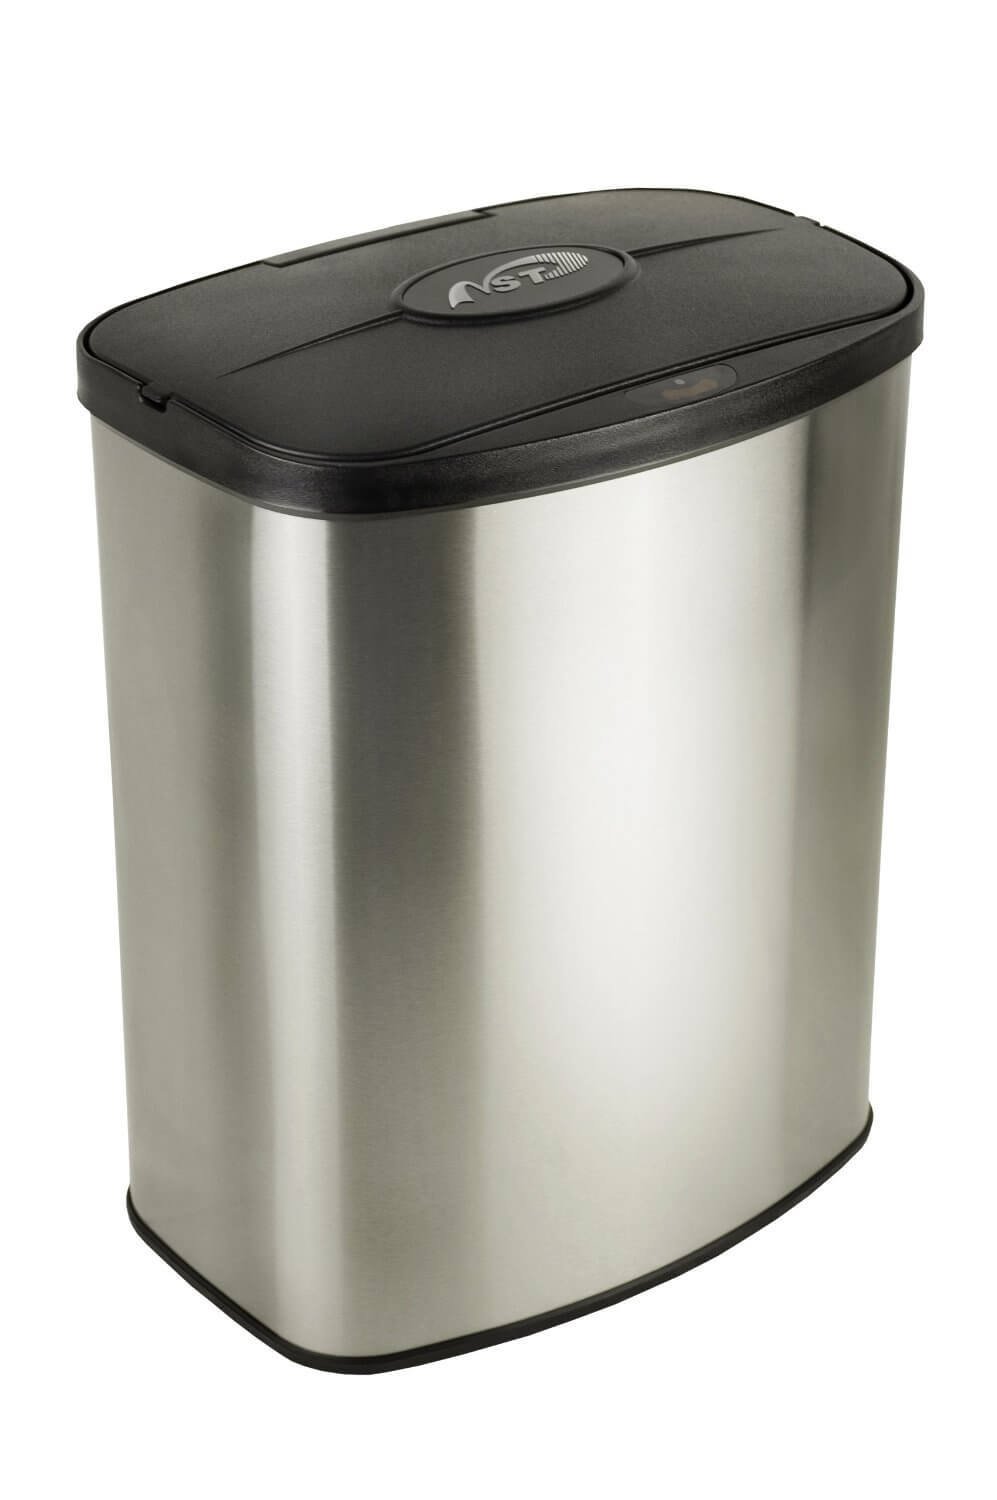 8l capacity trash cans with sensor lid, DZT-8-1A